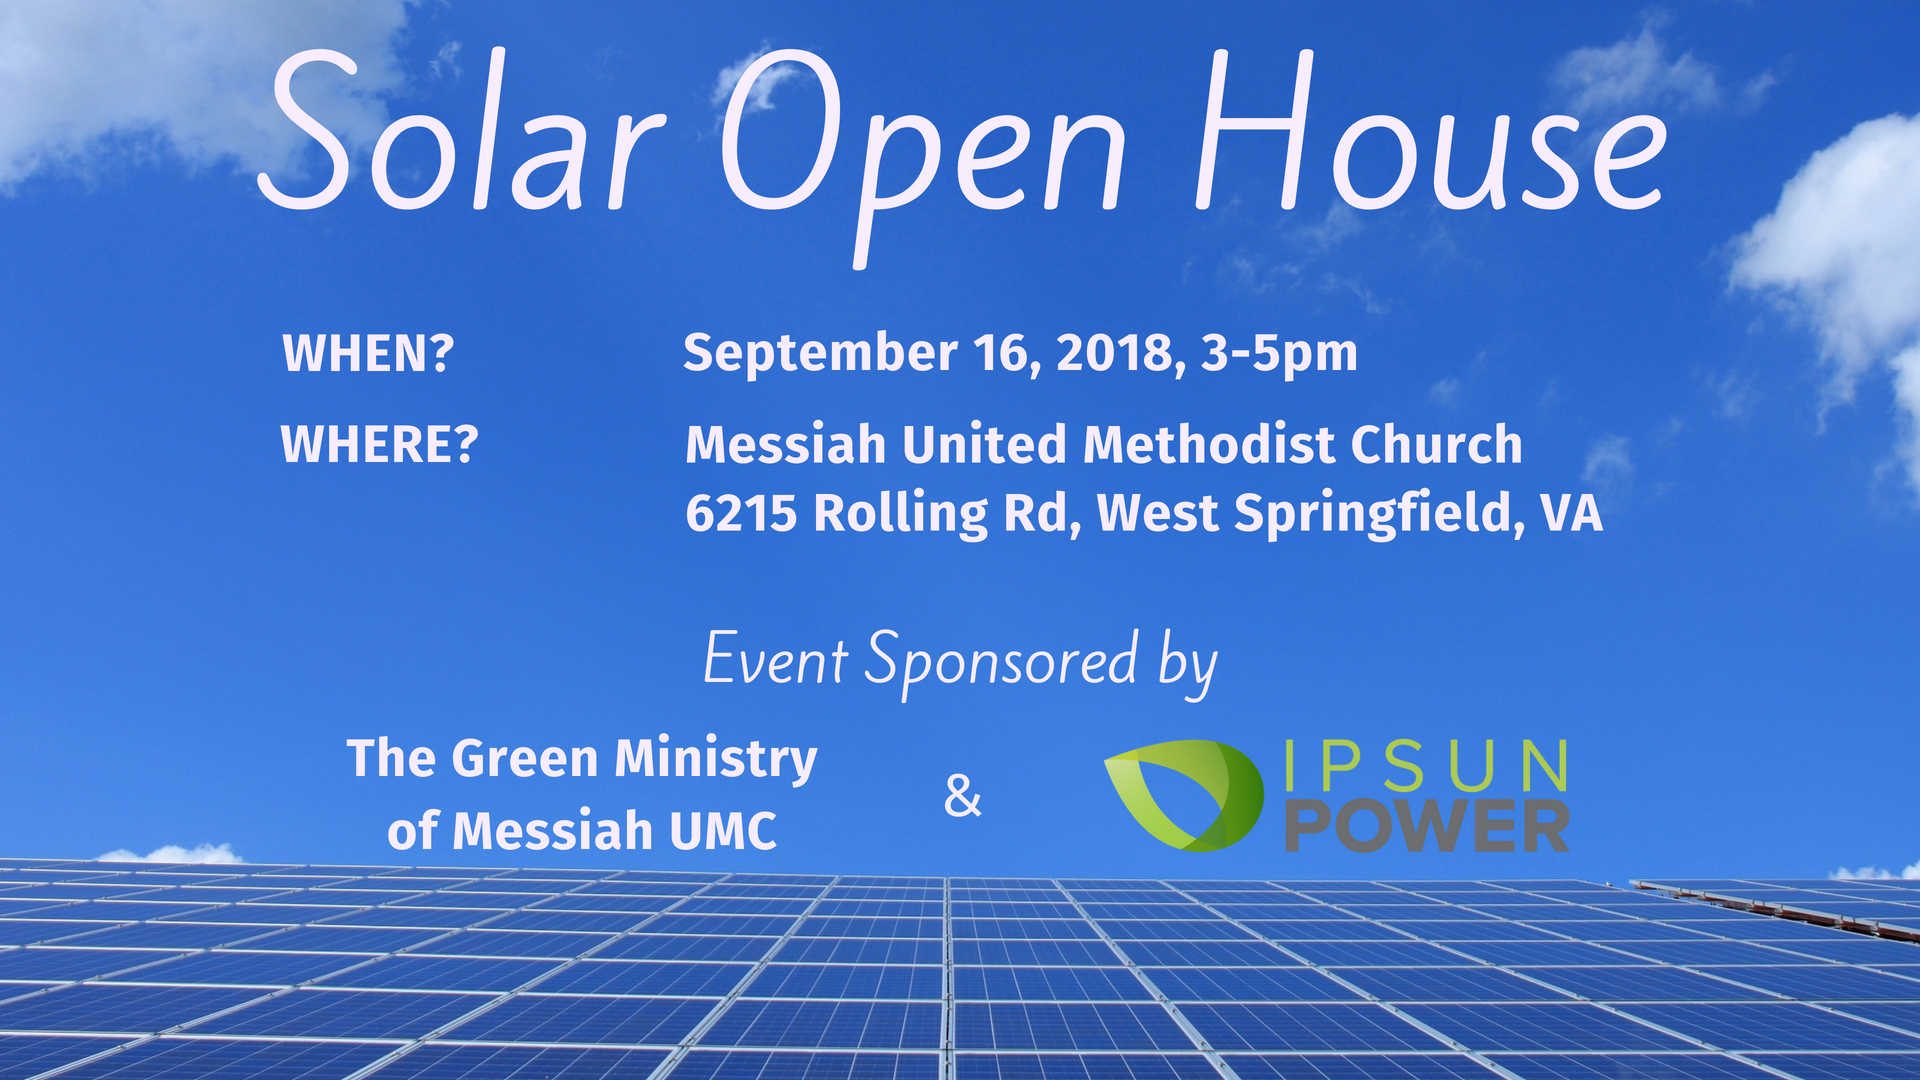 Solar Open House_Facebook Post 2